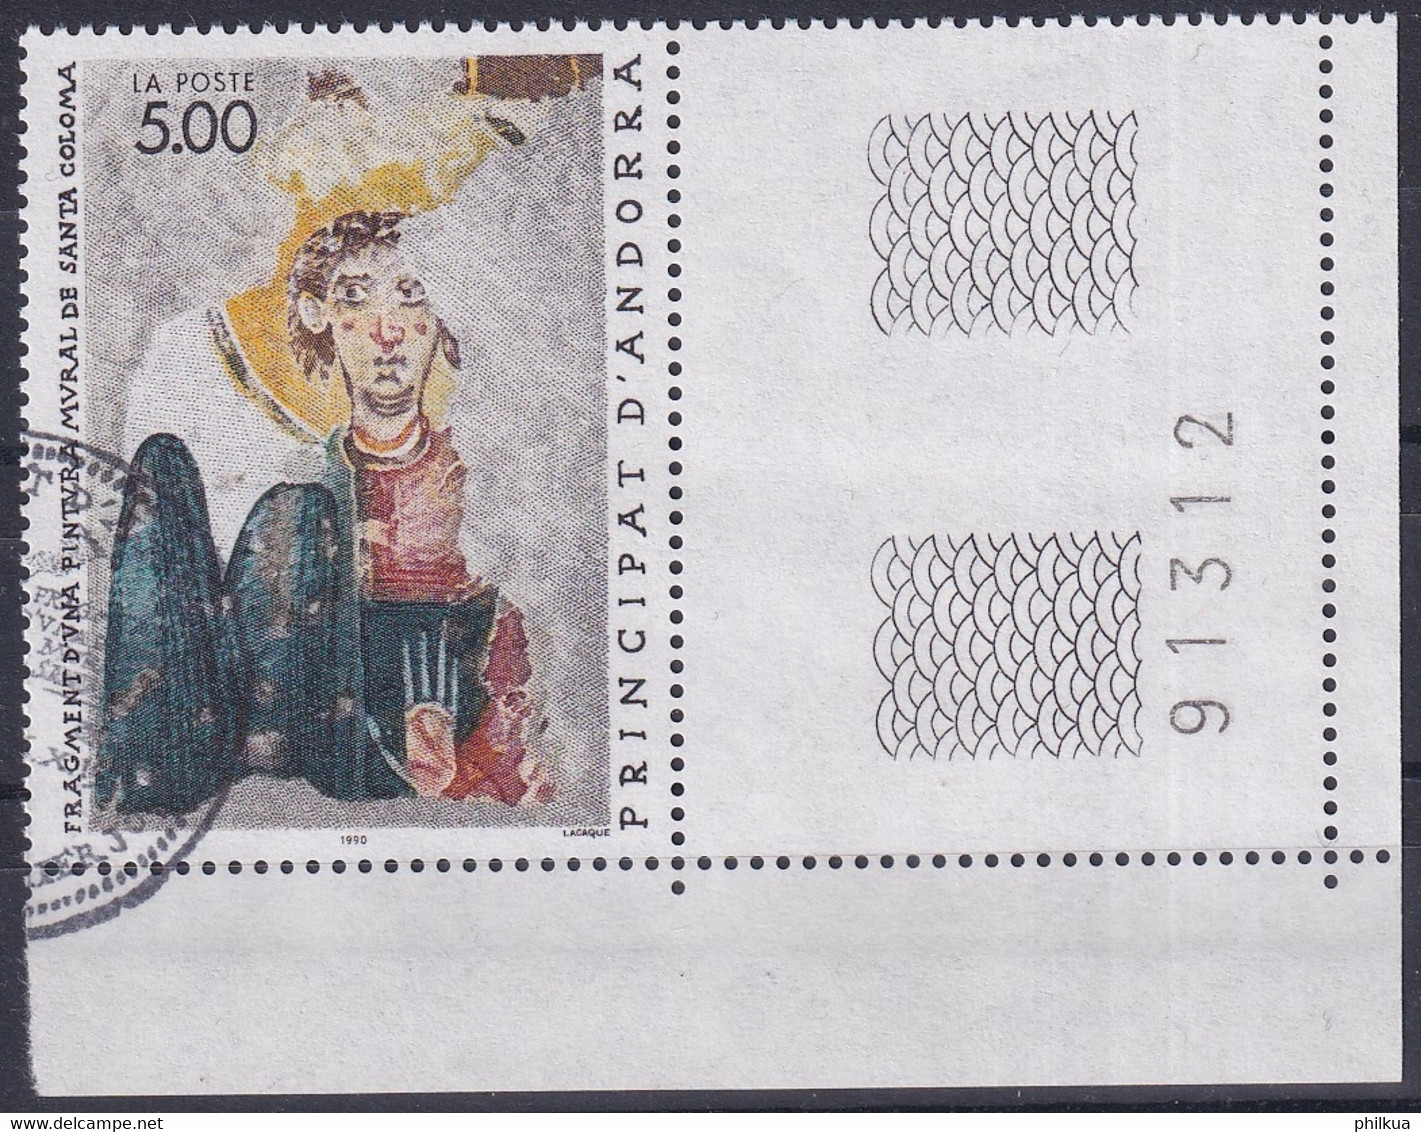 MiNr. 417 Andorra Französische Post1990, 6. Okt. Religiöse Kunst - Gebraucht